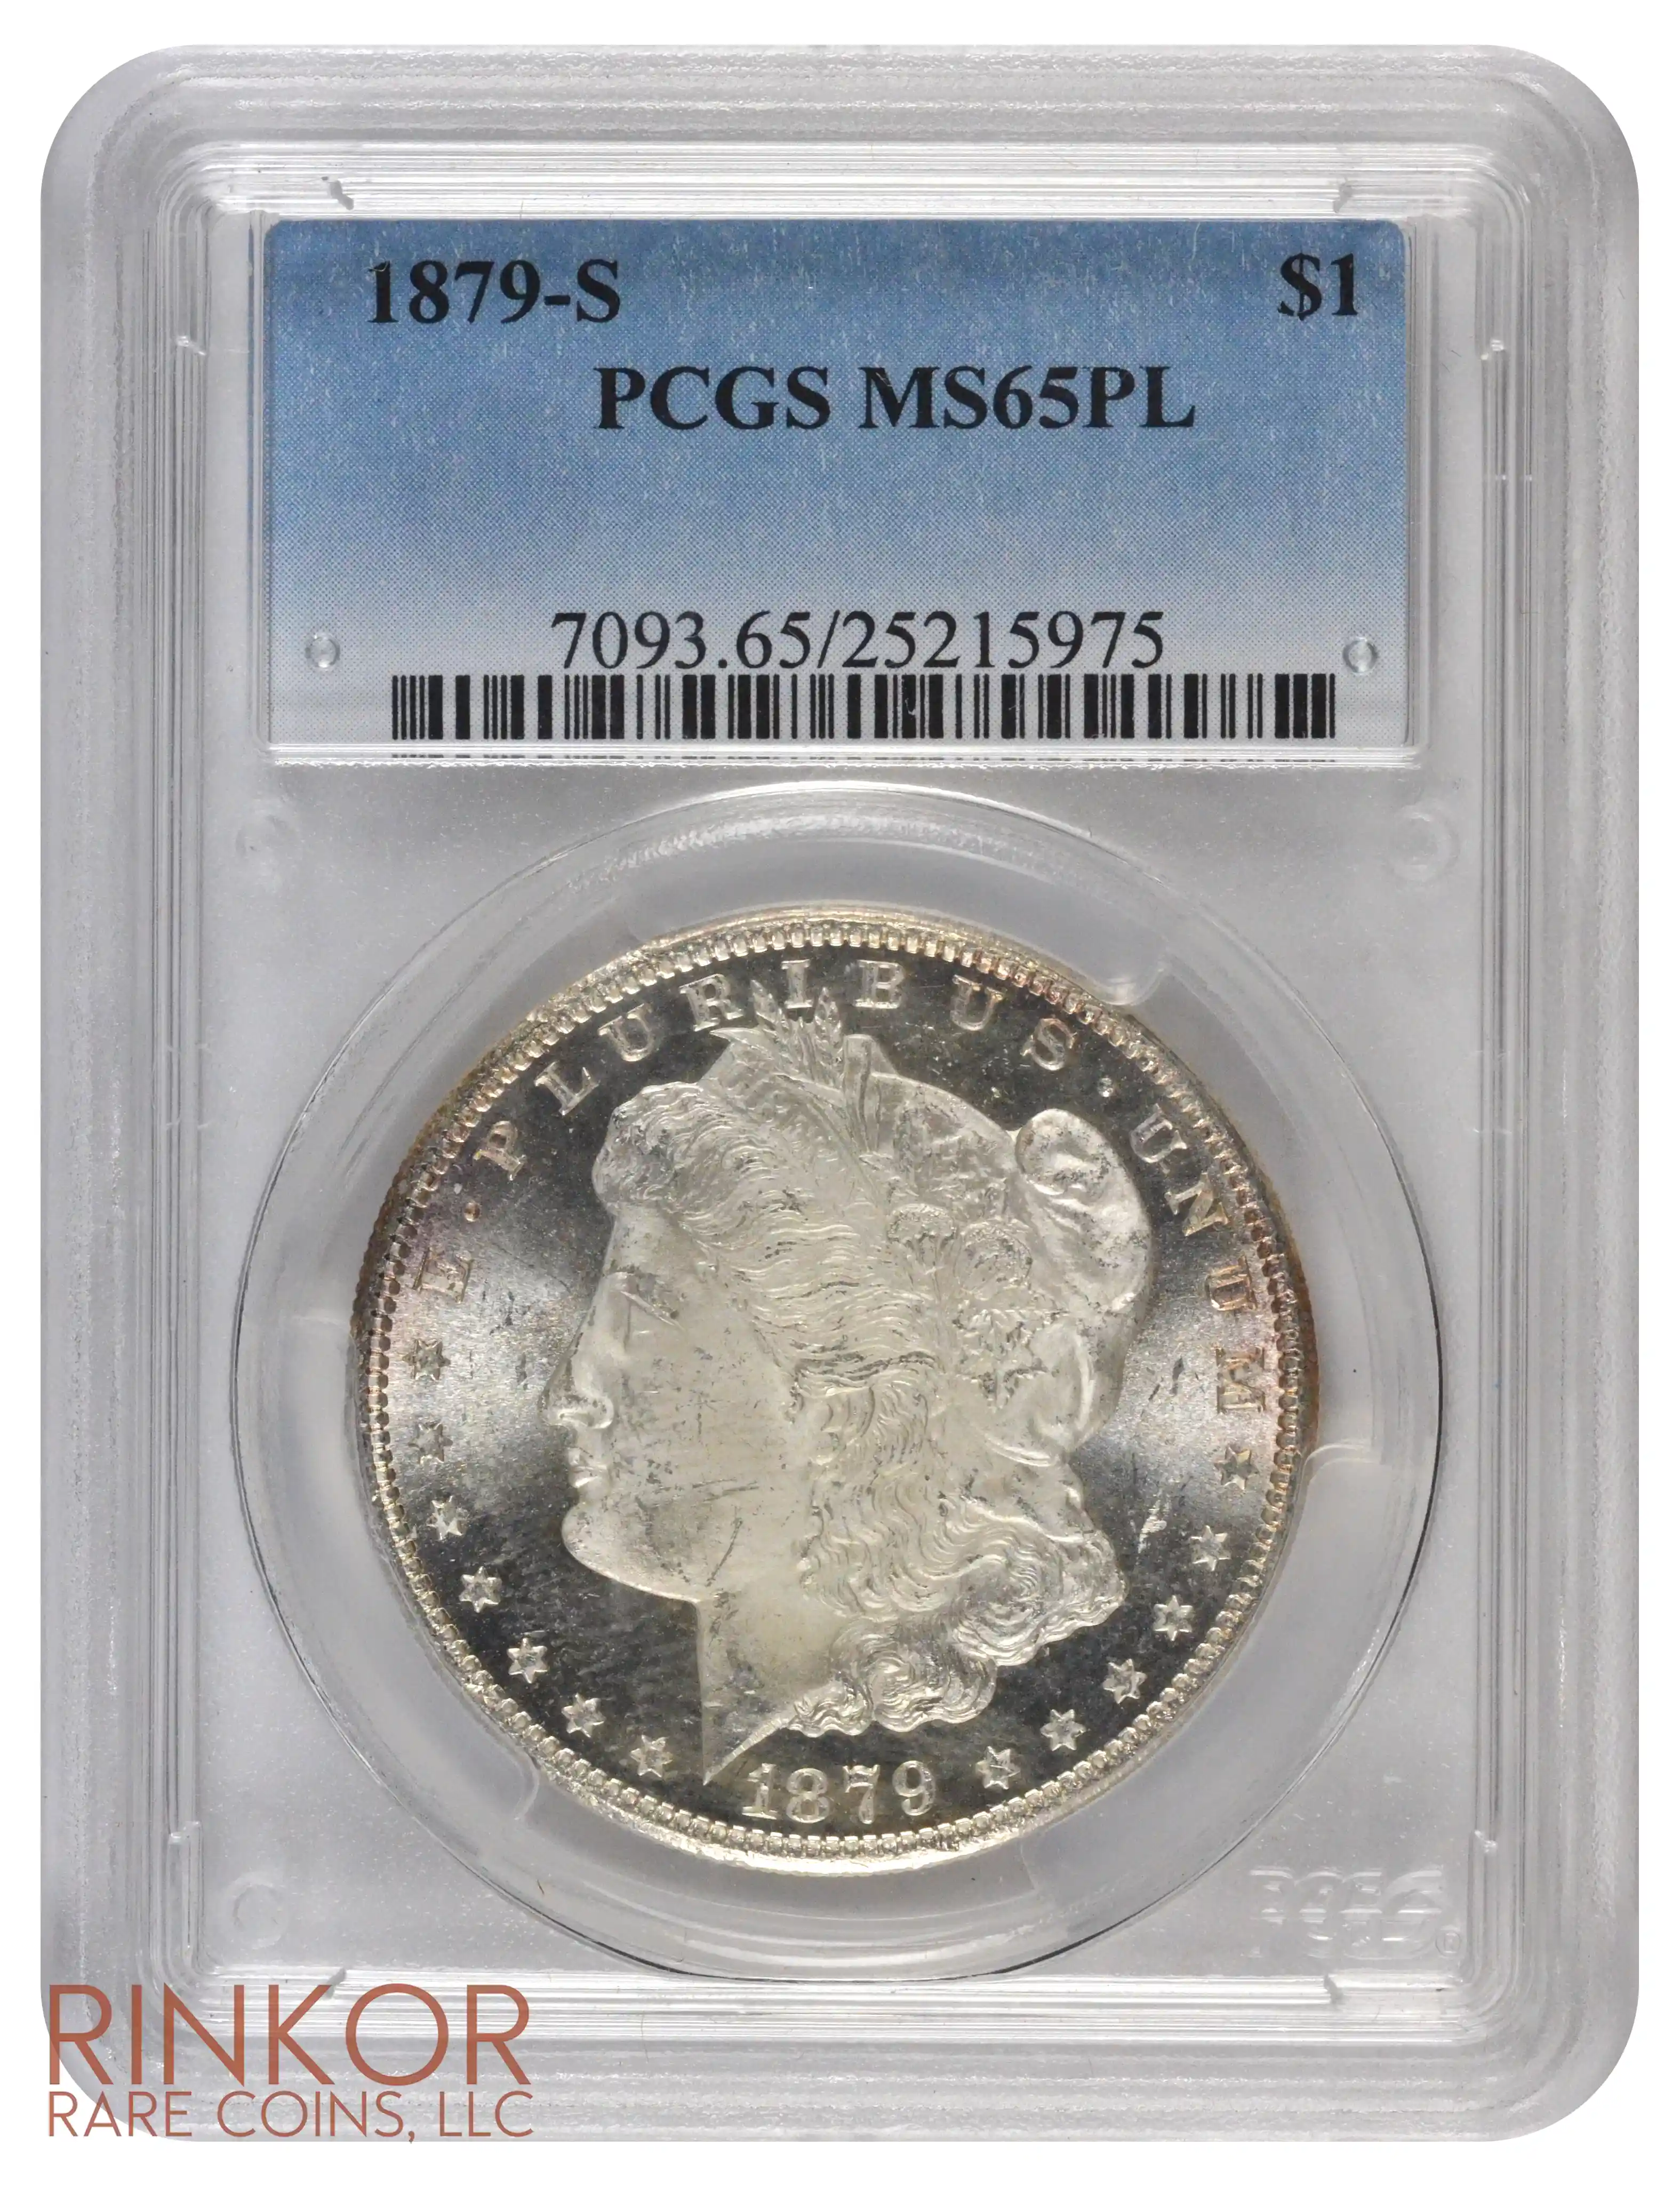 1879-S $1 PCGS MS 65 PL